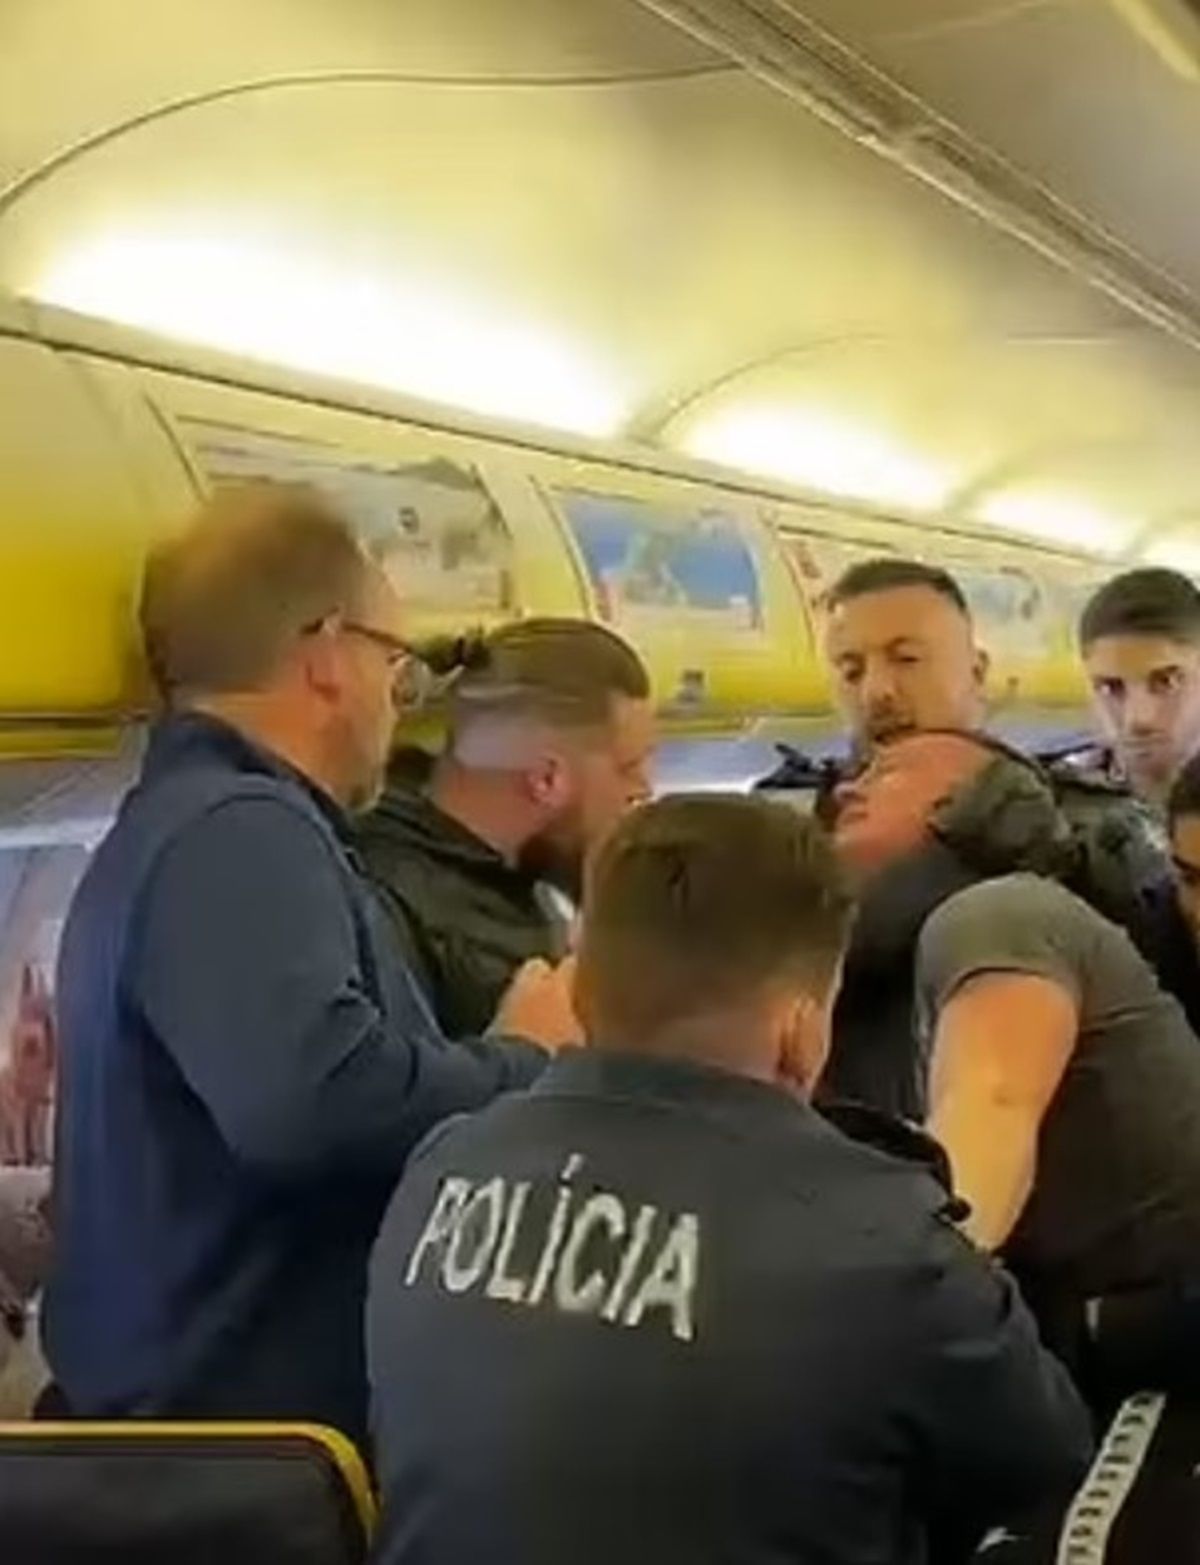 La policía agarrando a uno de los pasajeros en el avión (Foto: Daily Mail)